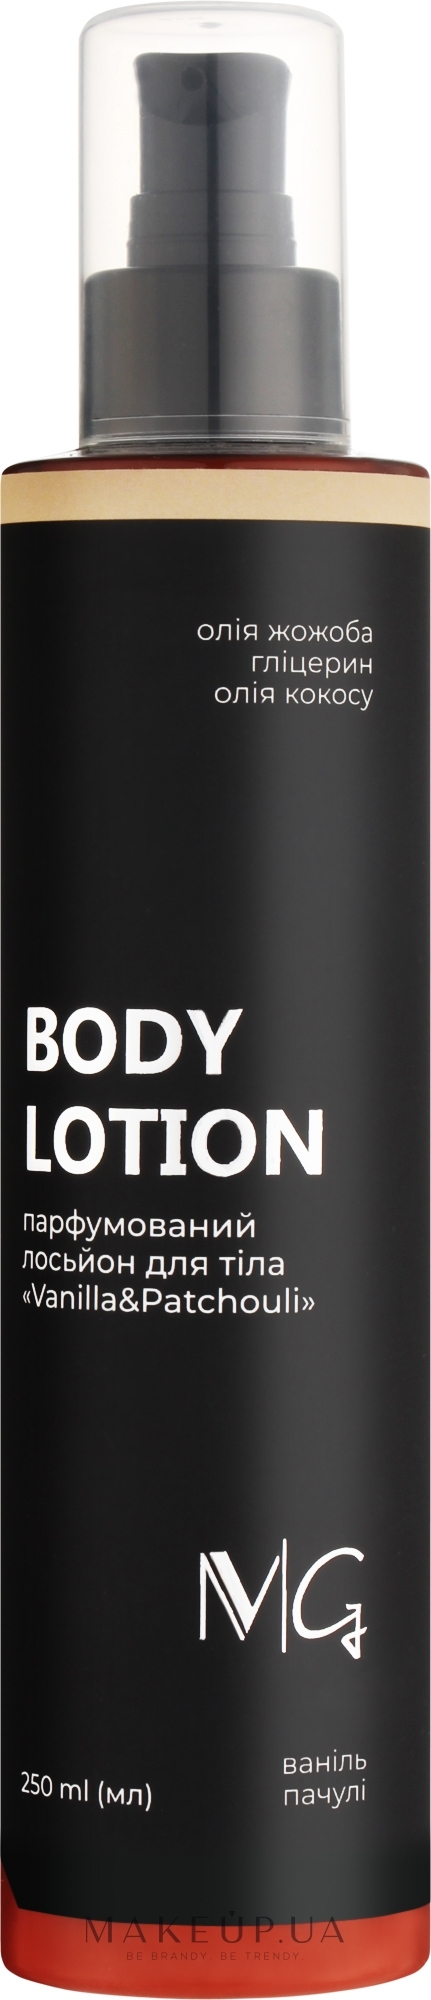 Лосьйон для тіла парфумований "Vanilla & Patchouli" - MG Body Lotion — фото 250ml